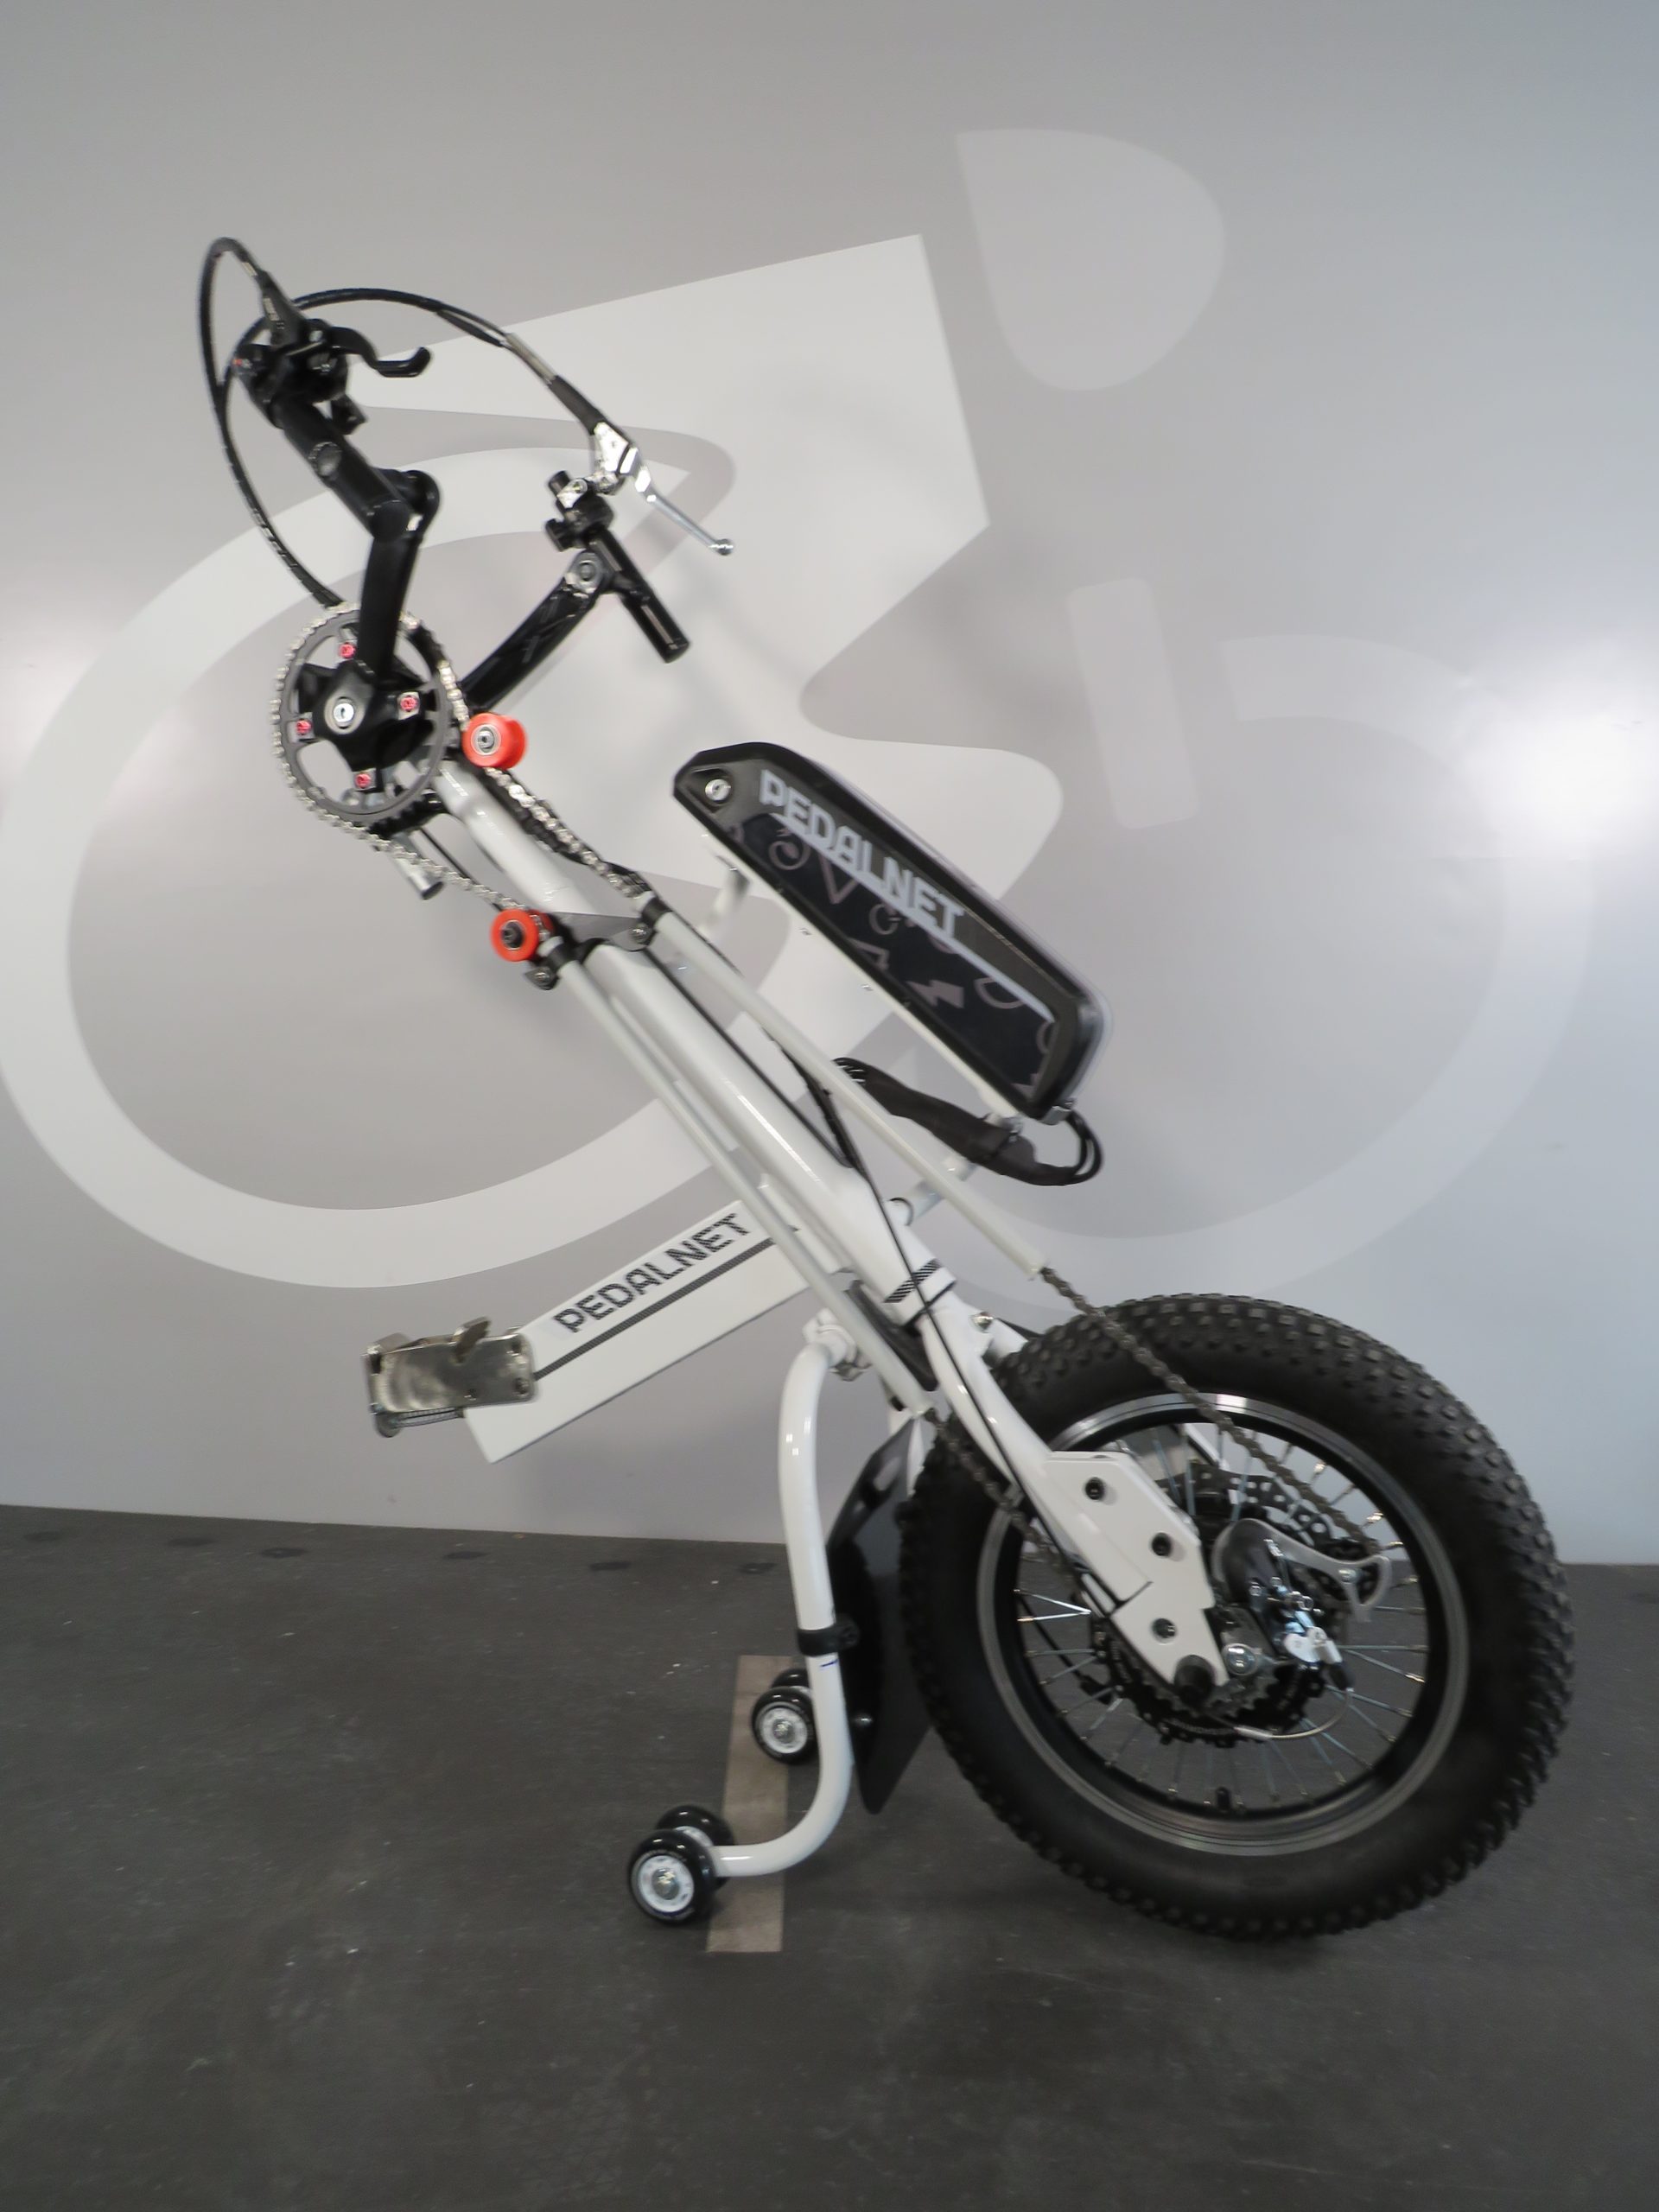 acople handbike híbrido, eléctrico y manual hecho a medida